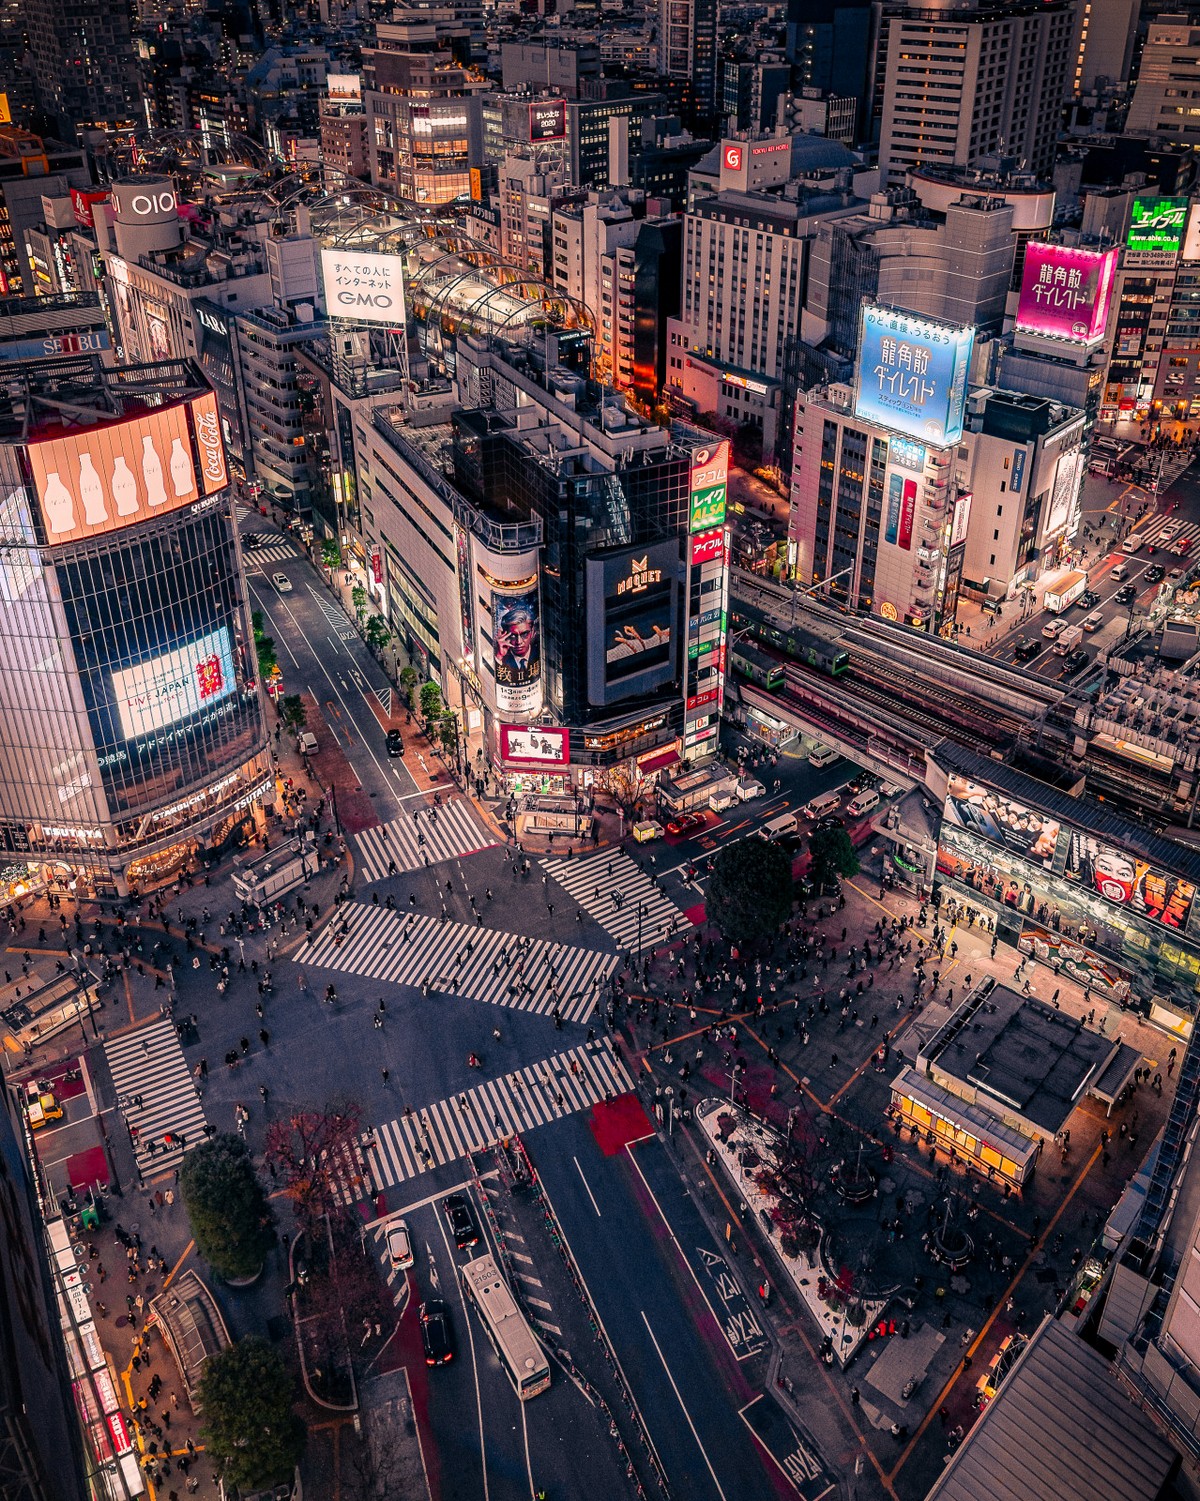 Улицы Токио на снимках от Казуя Мияхара